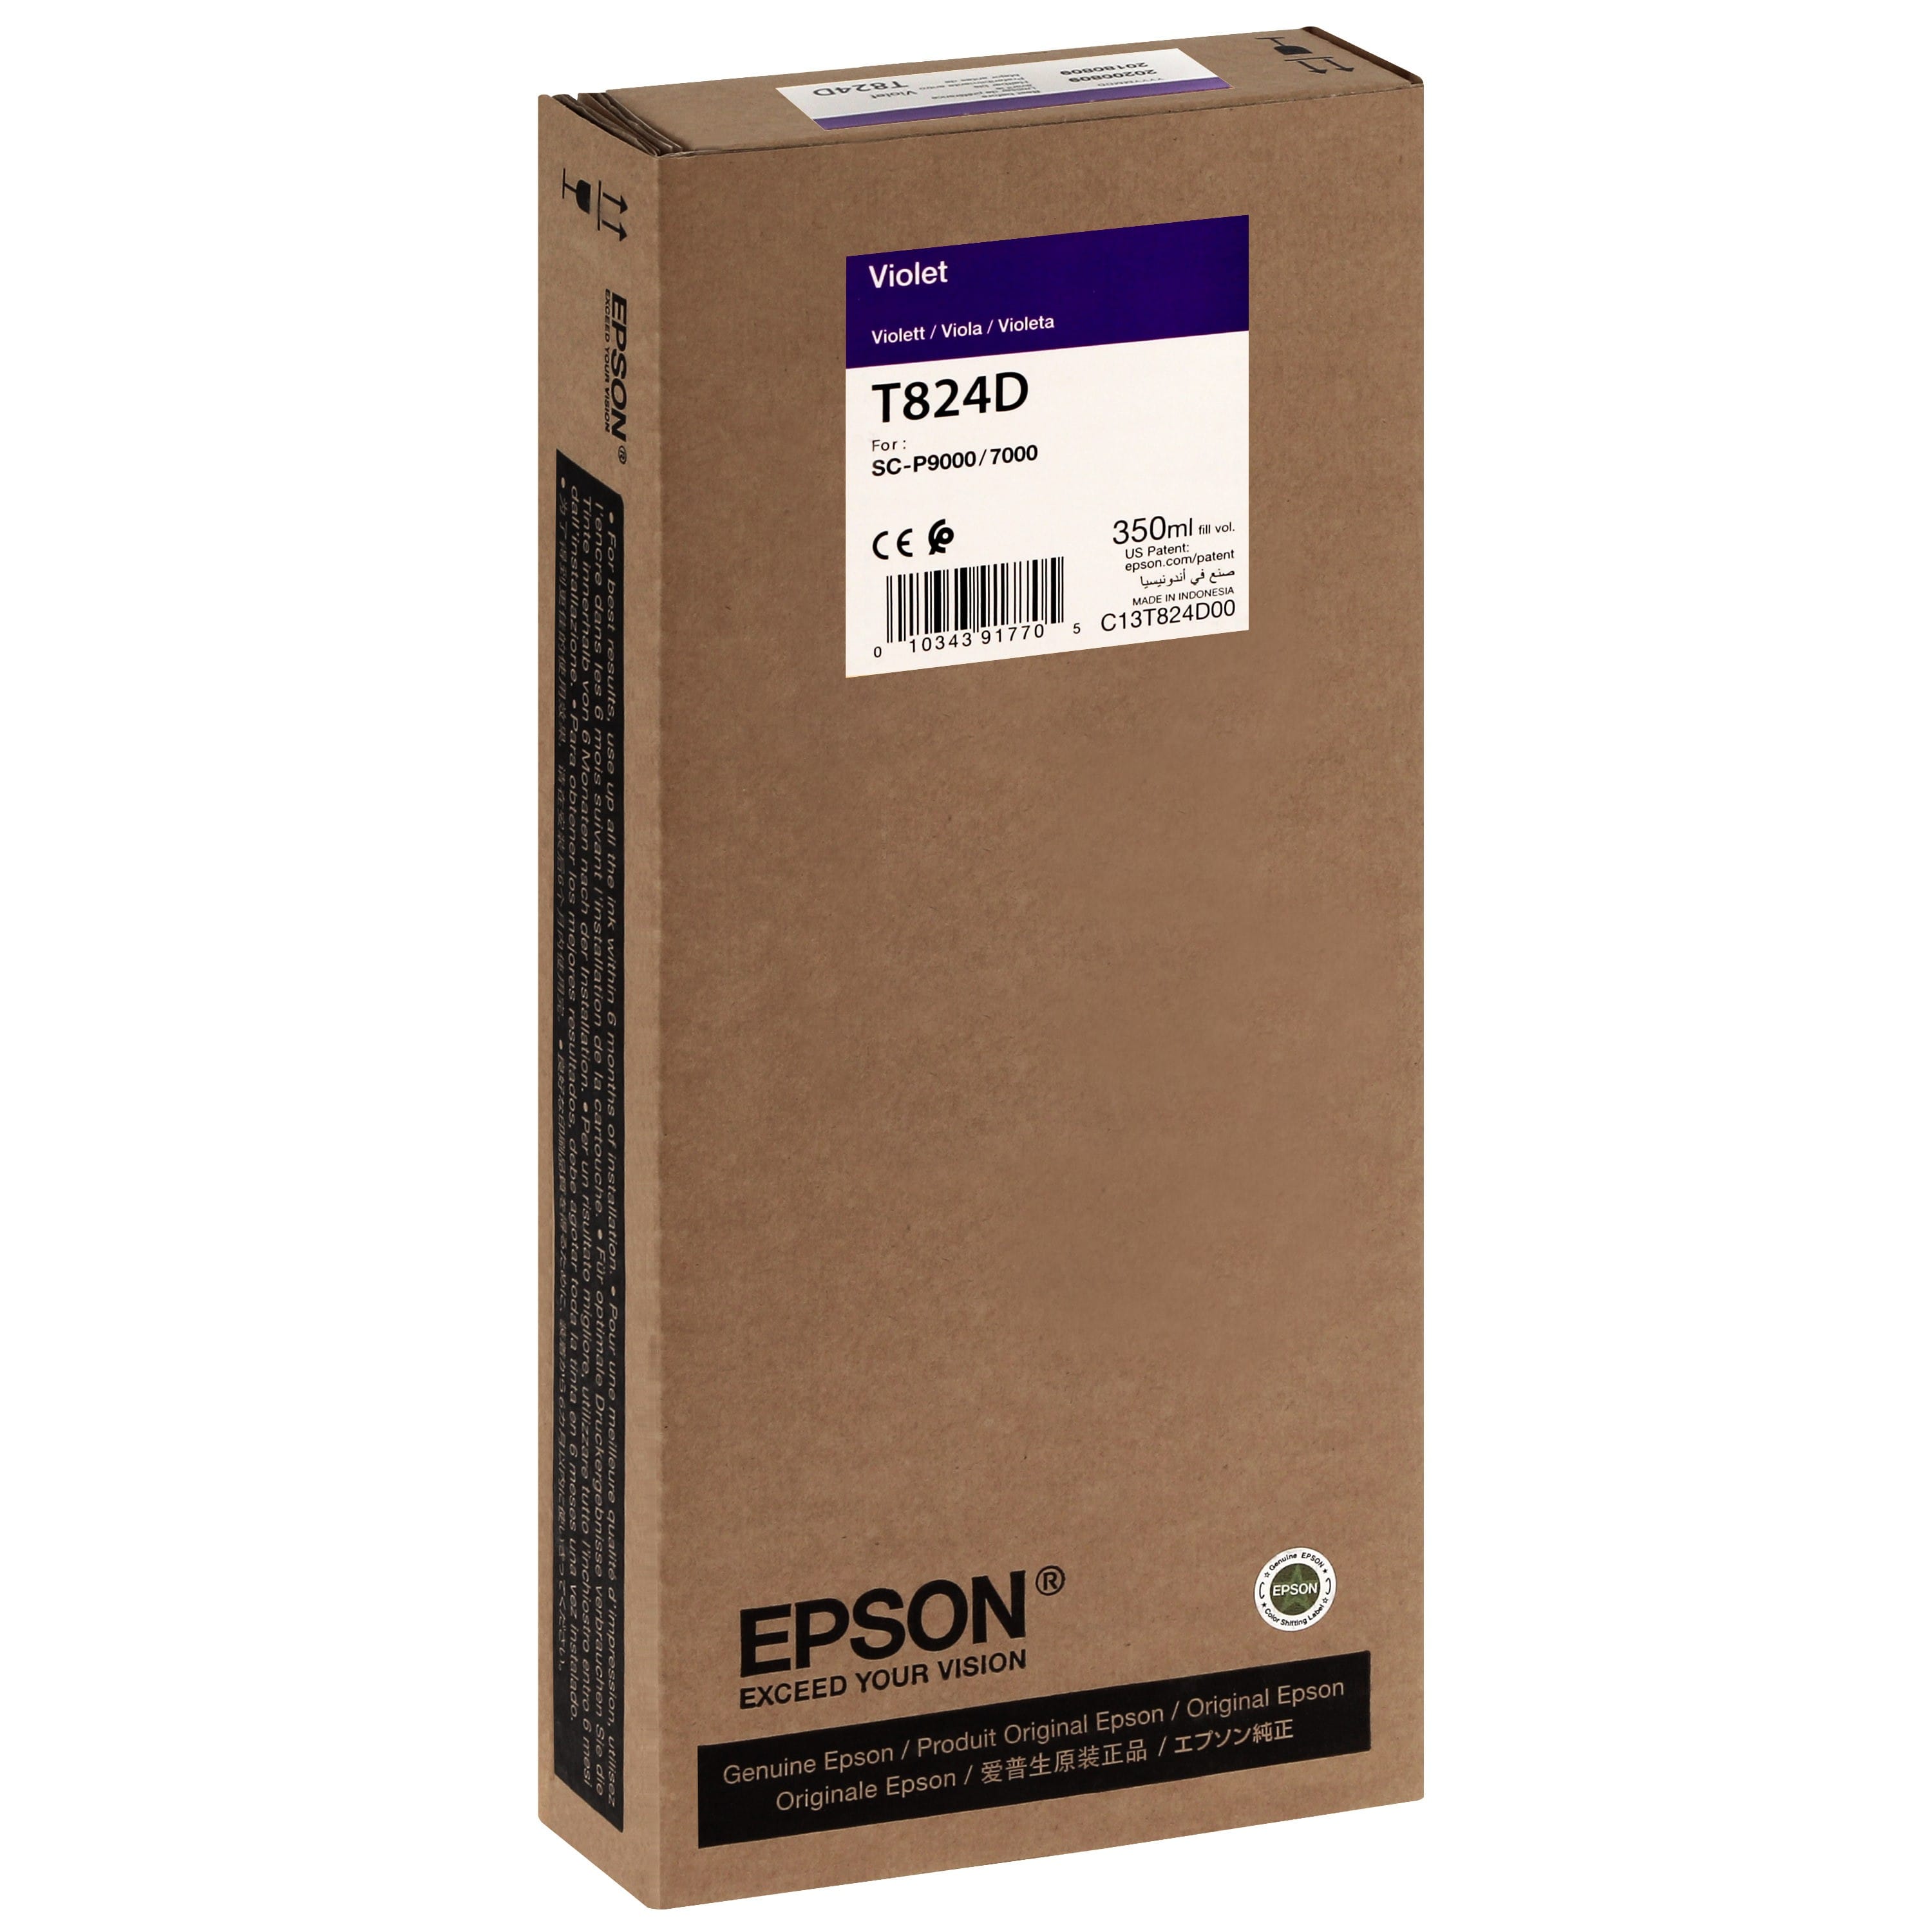 EPSON - Cartouche d'encre traceur T824D Pour imprimante SC-P7000V/9000V Violet - 350ml